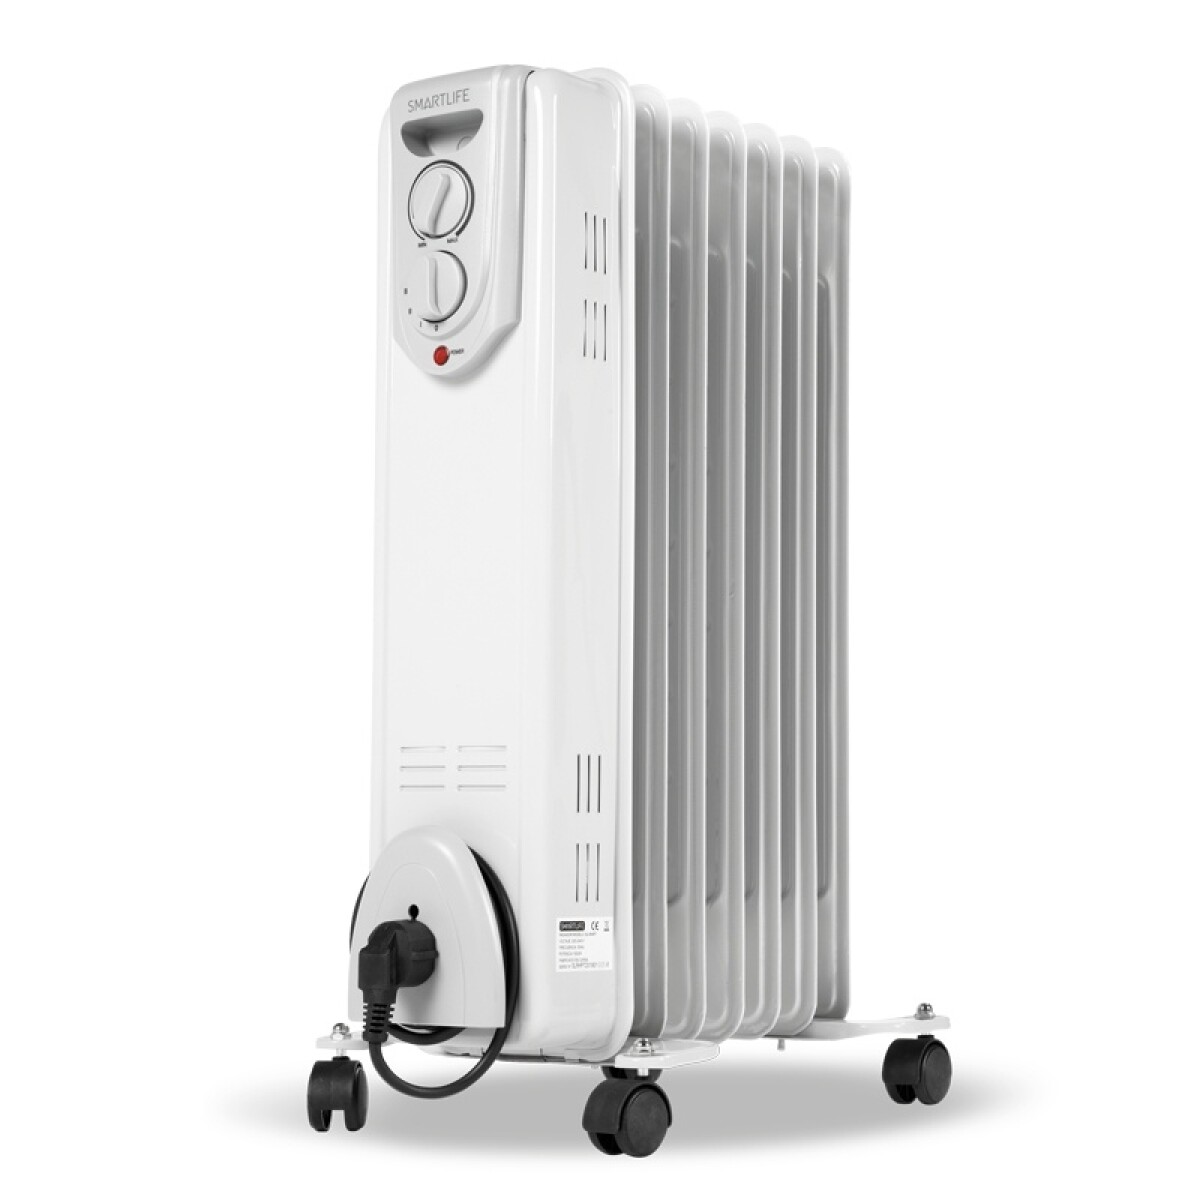 Calefactor De Aceite Smartlife Rhp7 1500w Gtia Oficial 